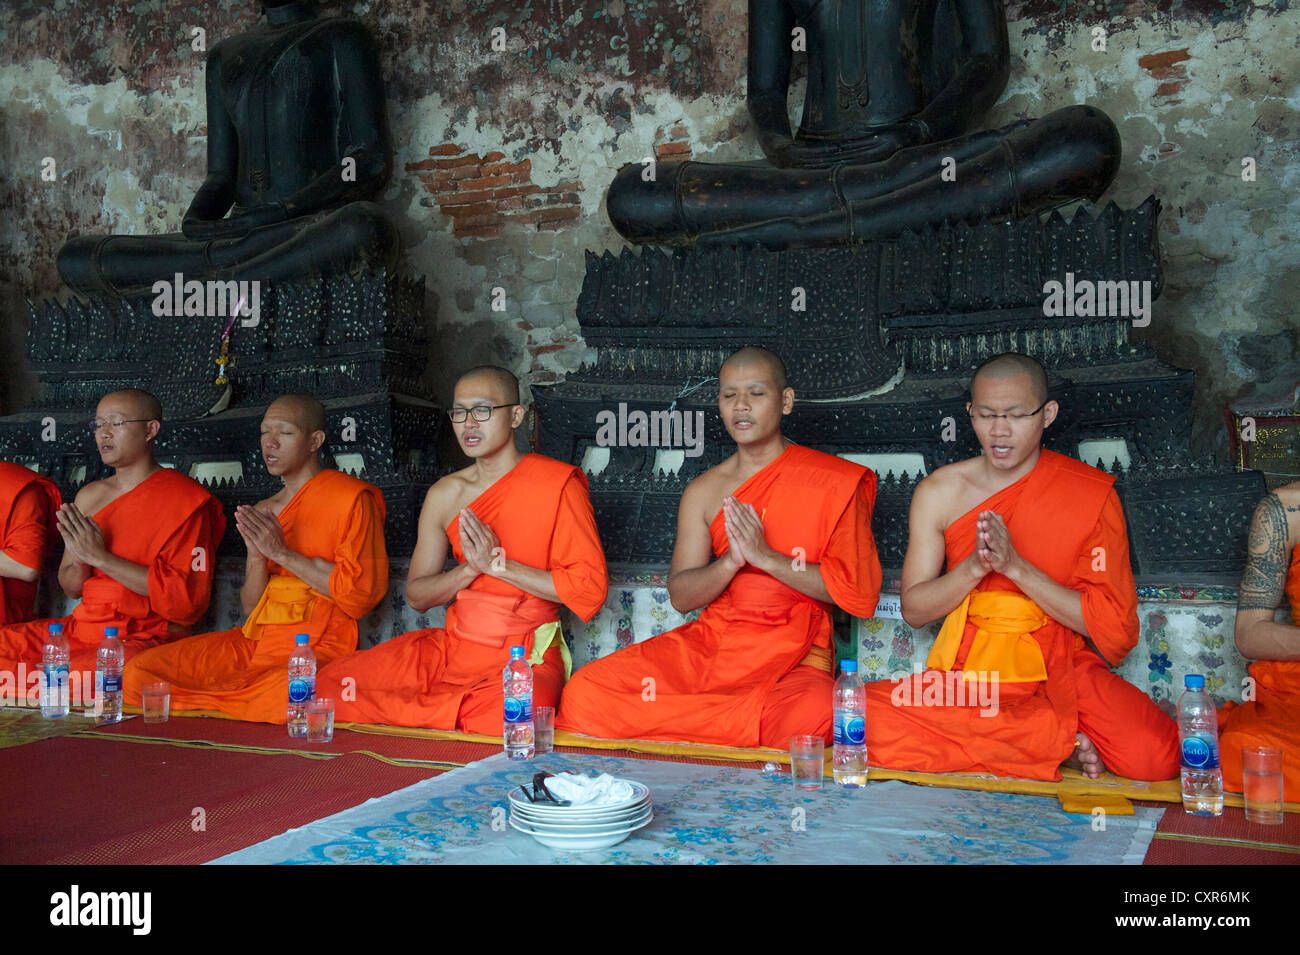 Los monjes en el Wat Suthat Thepwararam Ratchaworamahaviharn, Bangkok, Tailandia, Asia Foto de stock